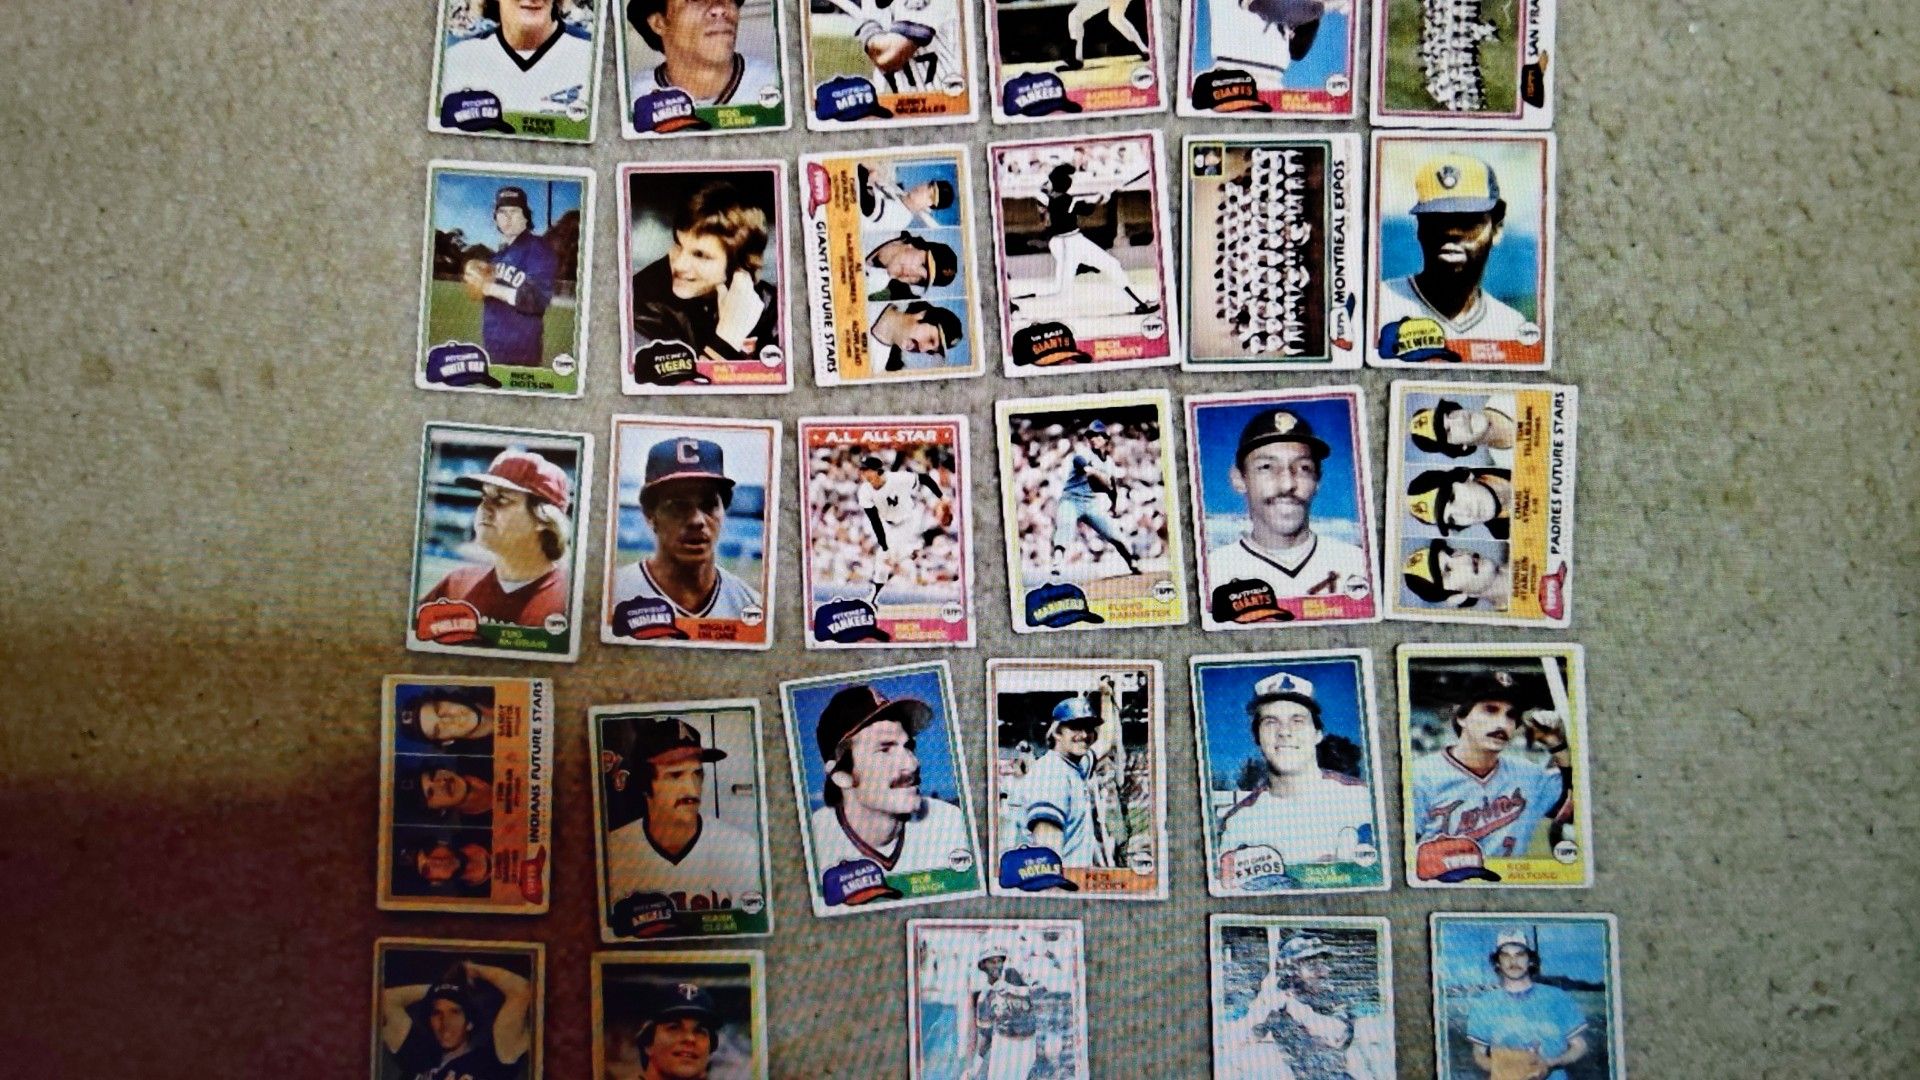 1981 Topps baseball set of 29 cards